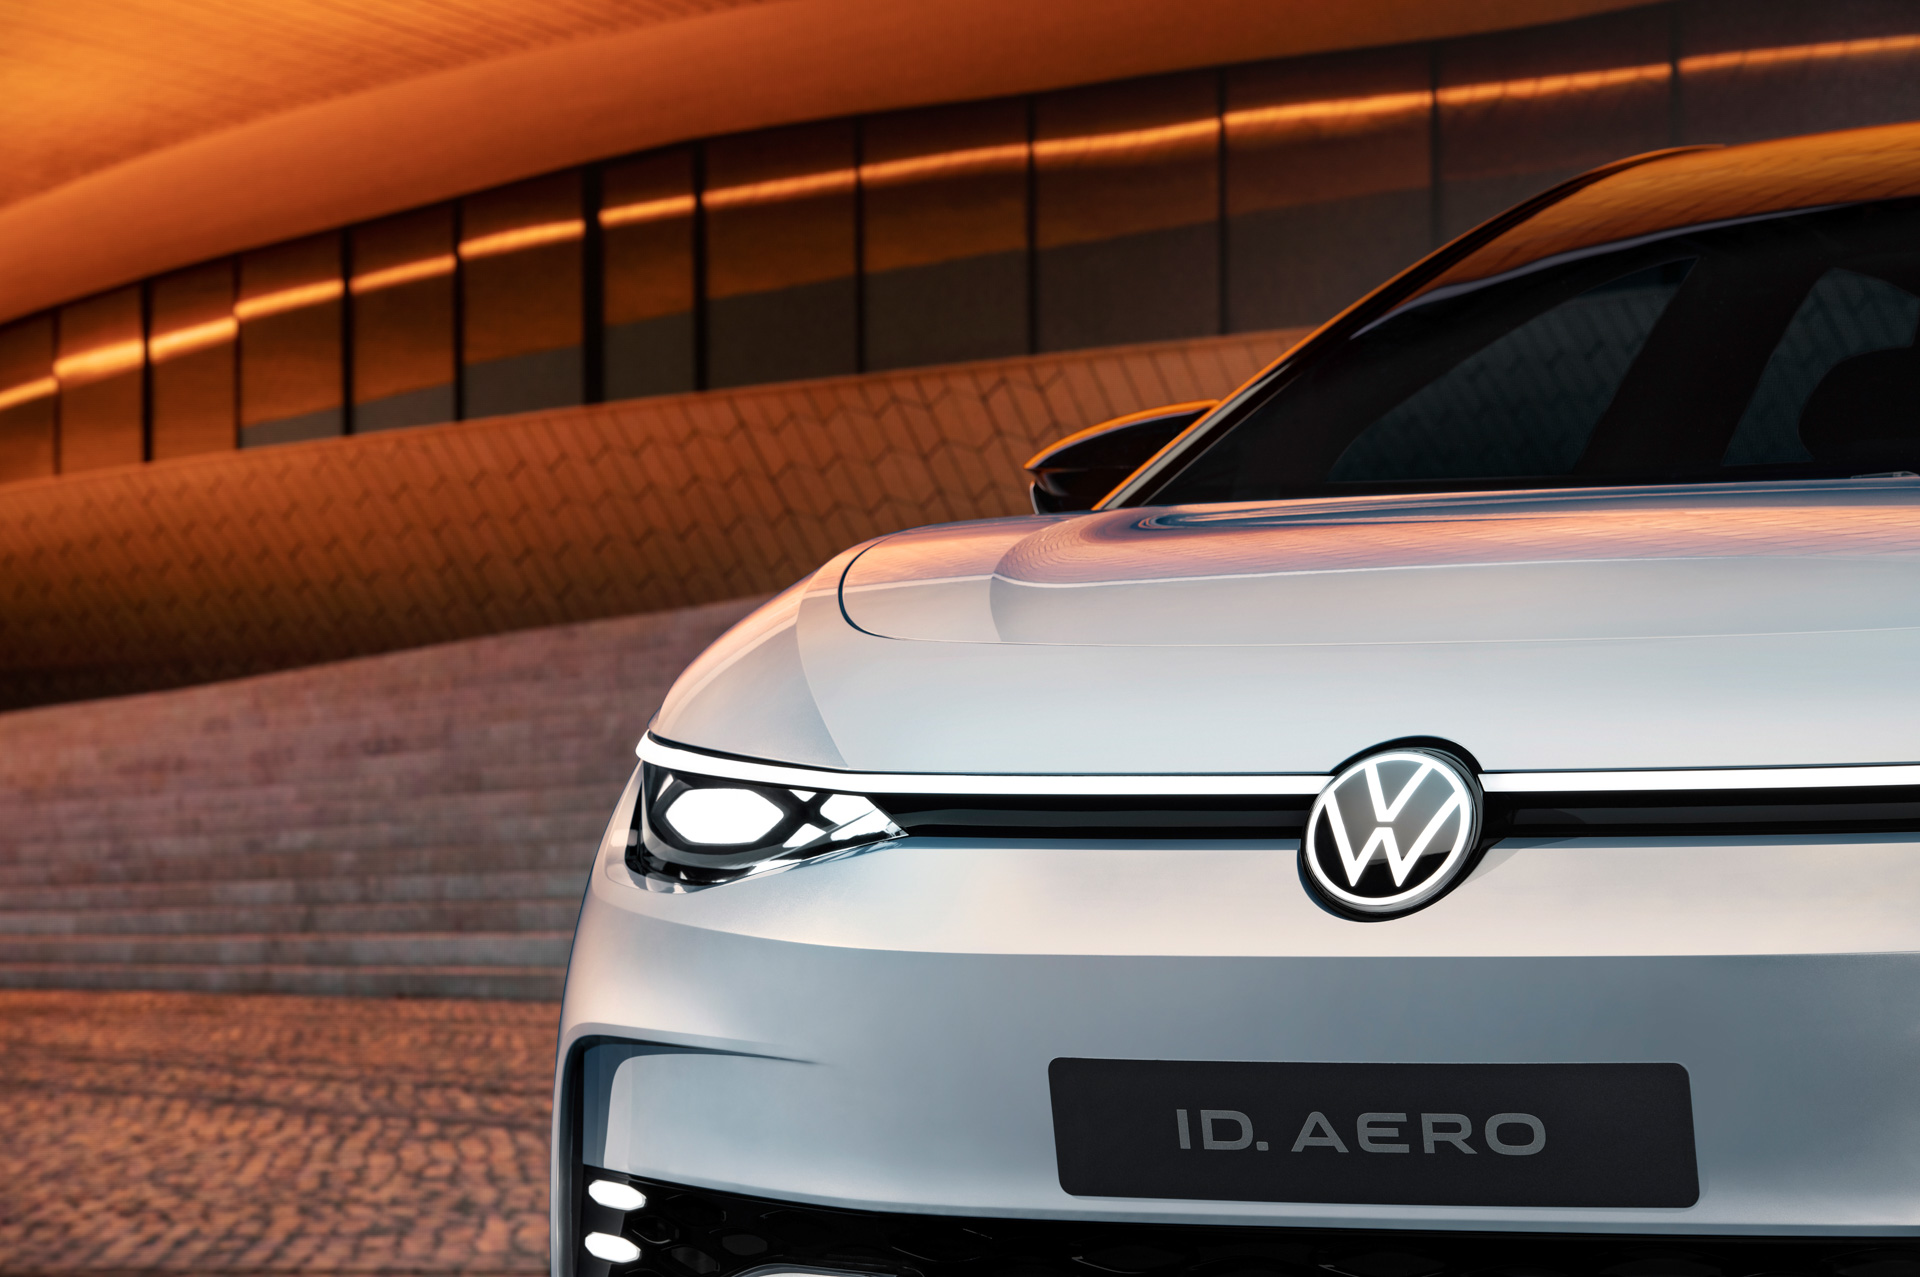 Volkswagen ID. Aero elektrikli sedan konsepti görücüye çıktı: 620 km menzil sunacak